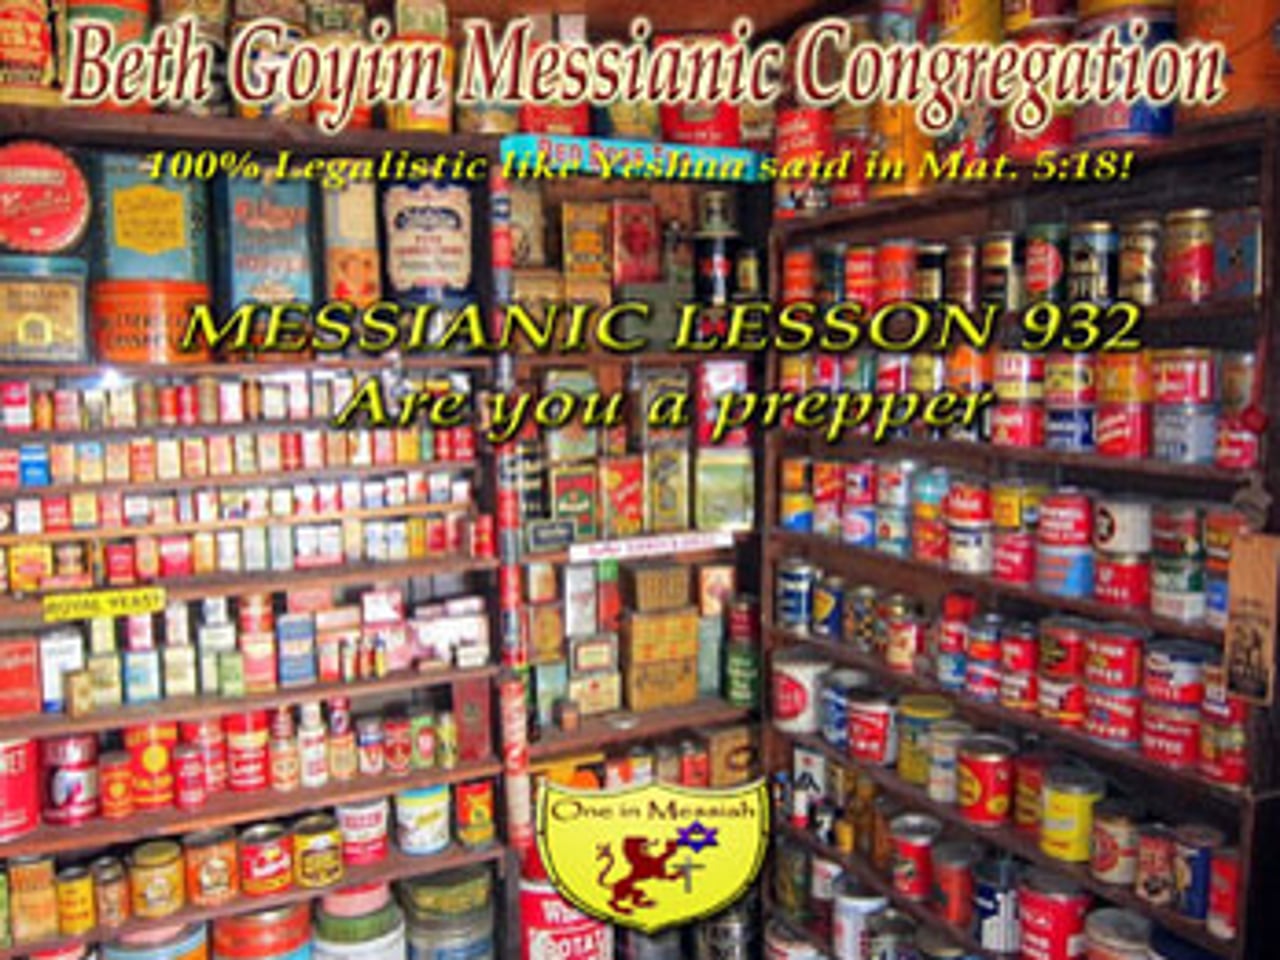 BGMCTV MESSIANIC LESSON 932 ARE YOU A PREPPER